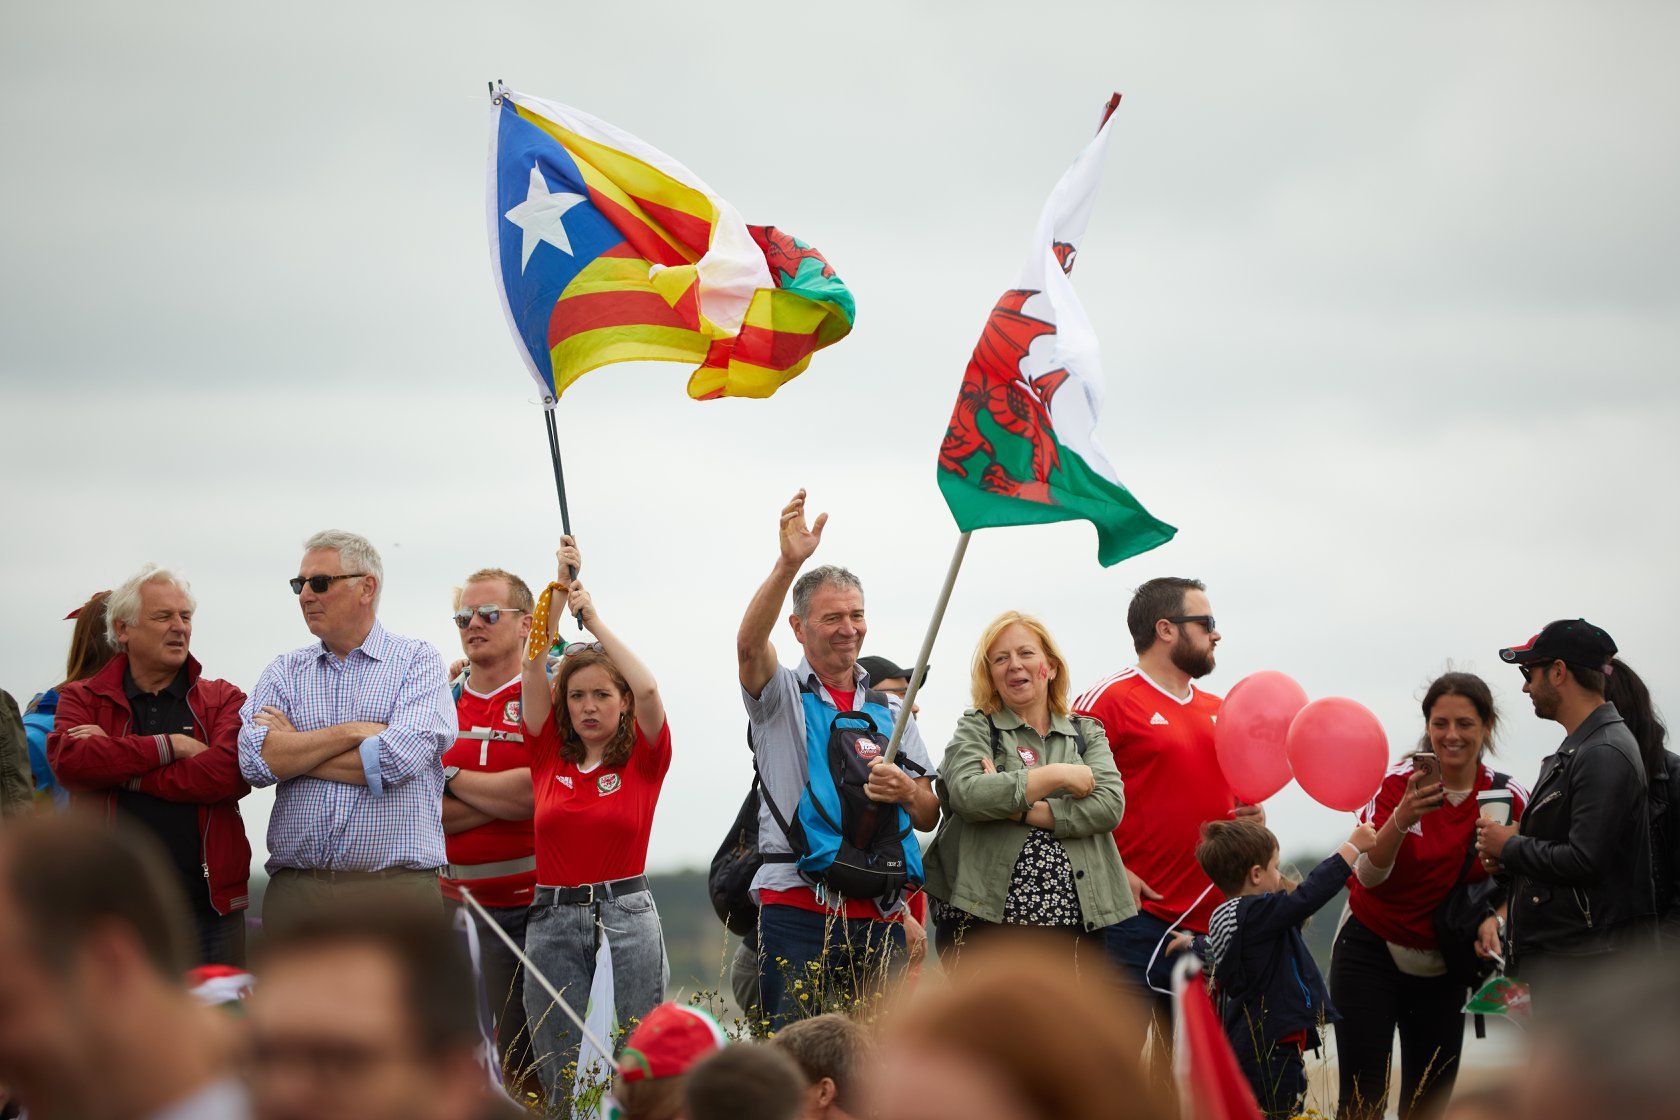 plaid cymru independencia gal·les flickr